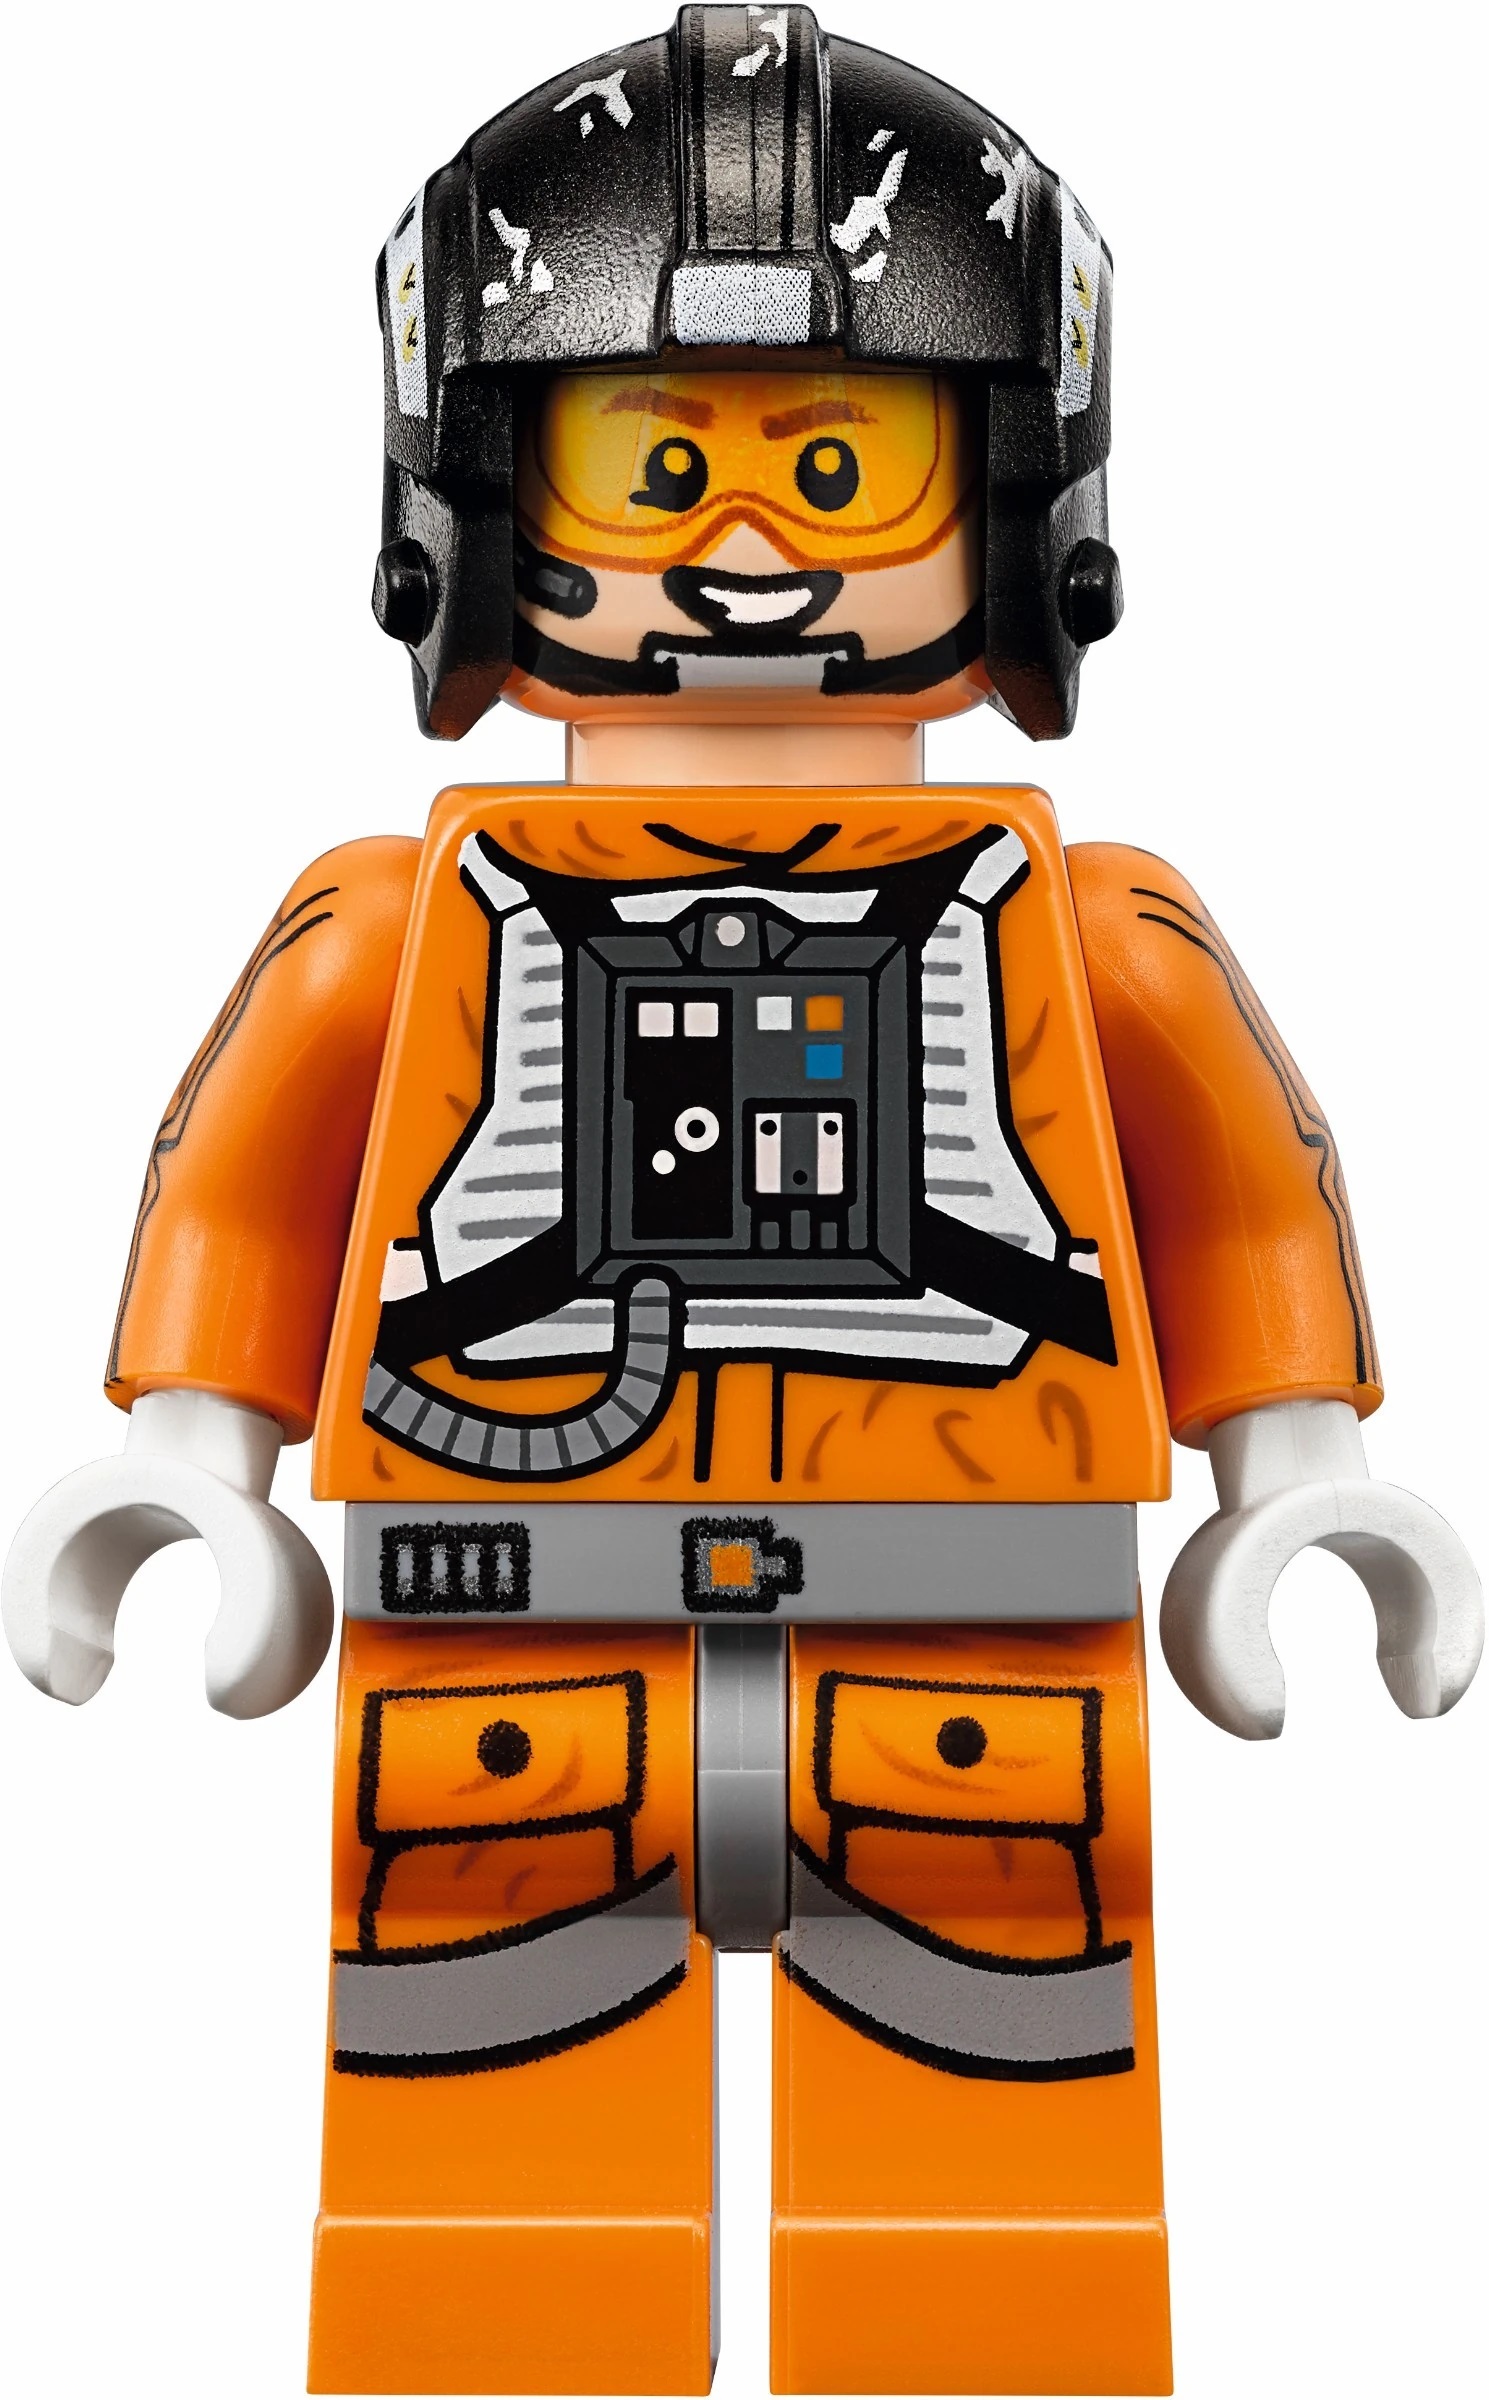 Details about   Zev Senesca LEGO Minifigure Lot Star Wars 8083 8089 